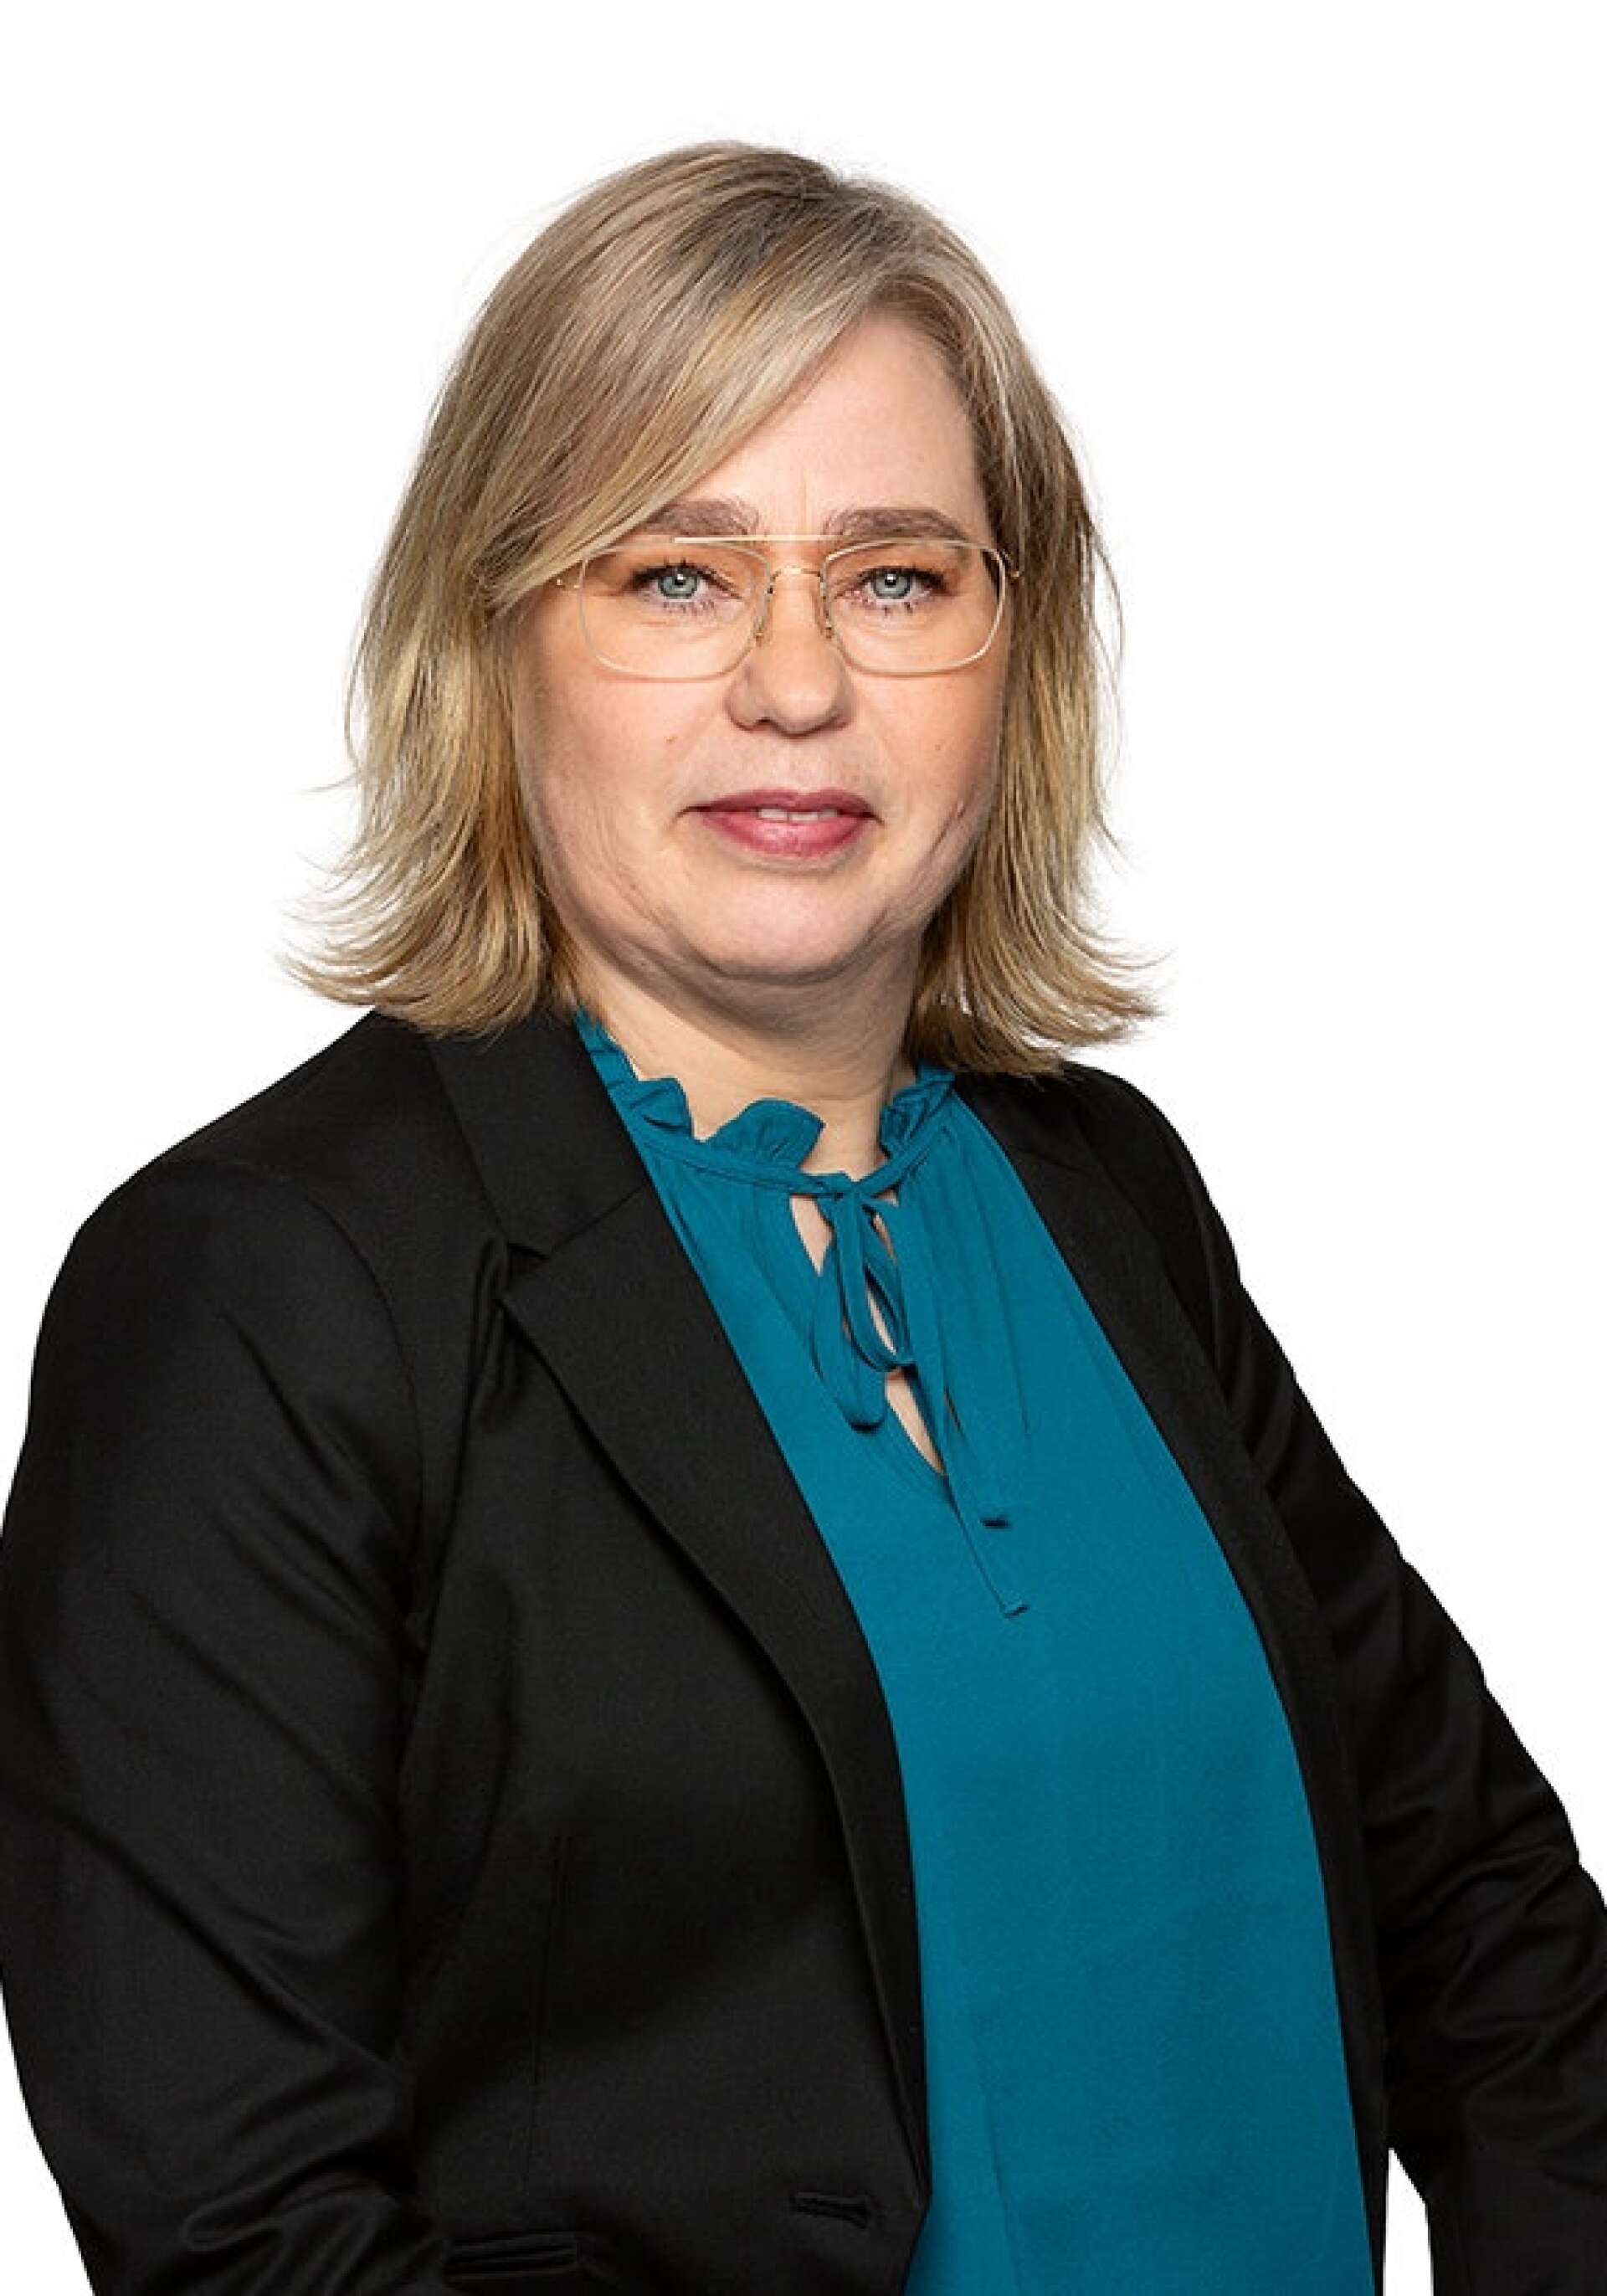 Anna Hedberg är regionchef i Värmland för Svenskt Näringsliv.